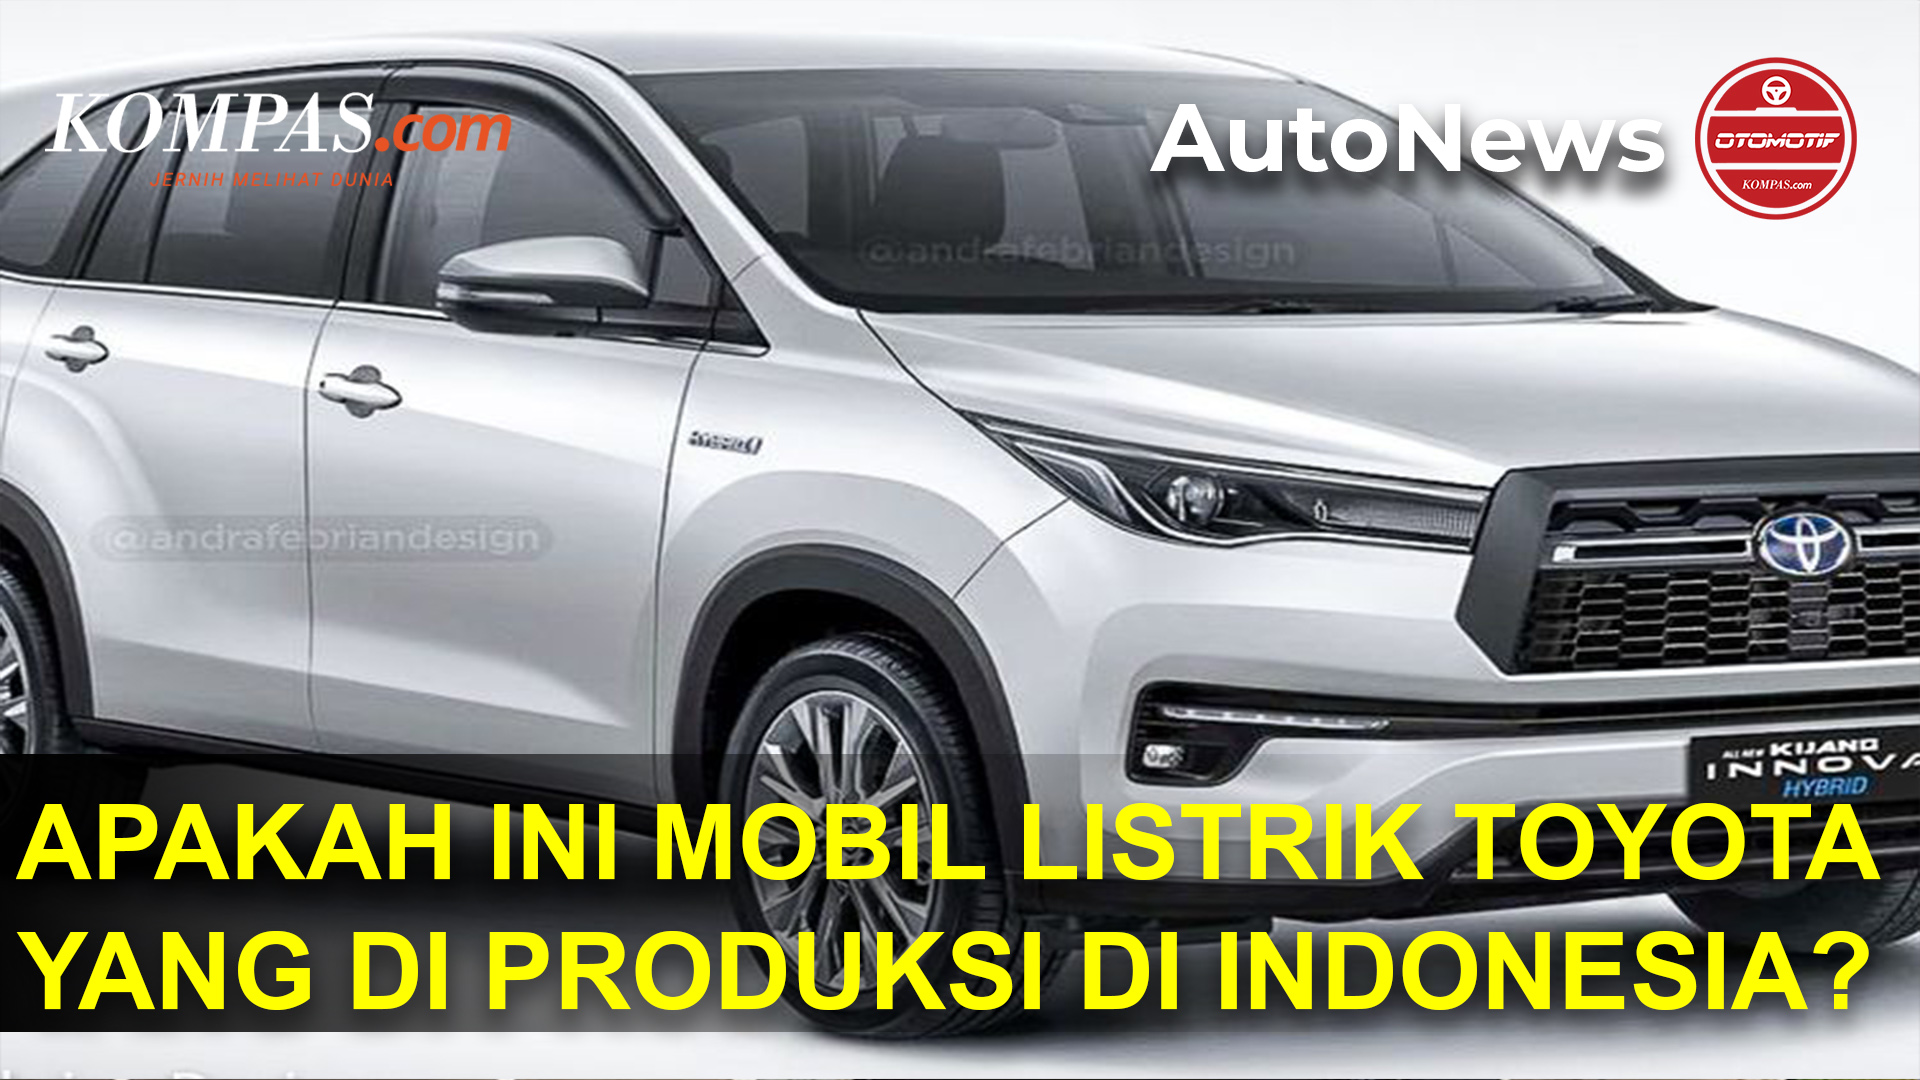 Toyota Segera Produksi Mobil Listrik di Indonesia. Penasaran? Simak Ulasannya